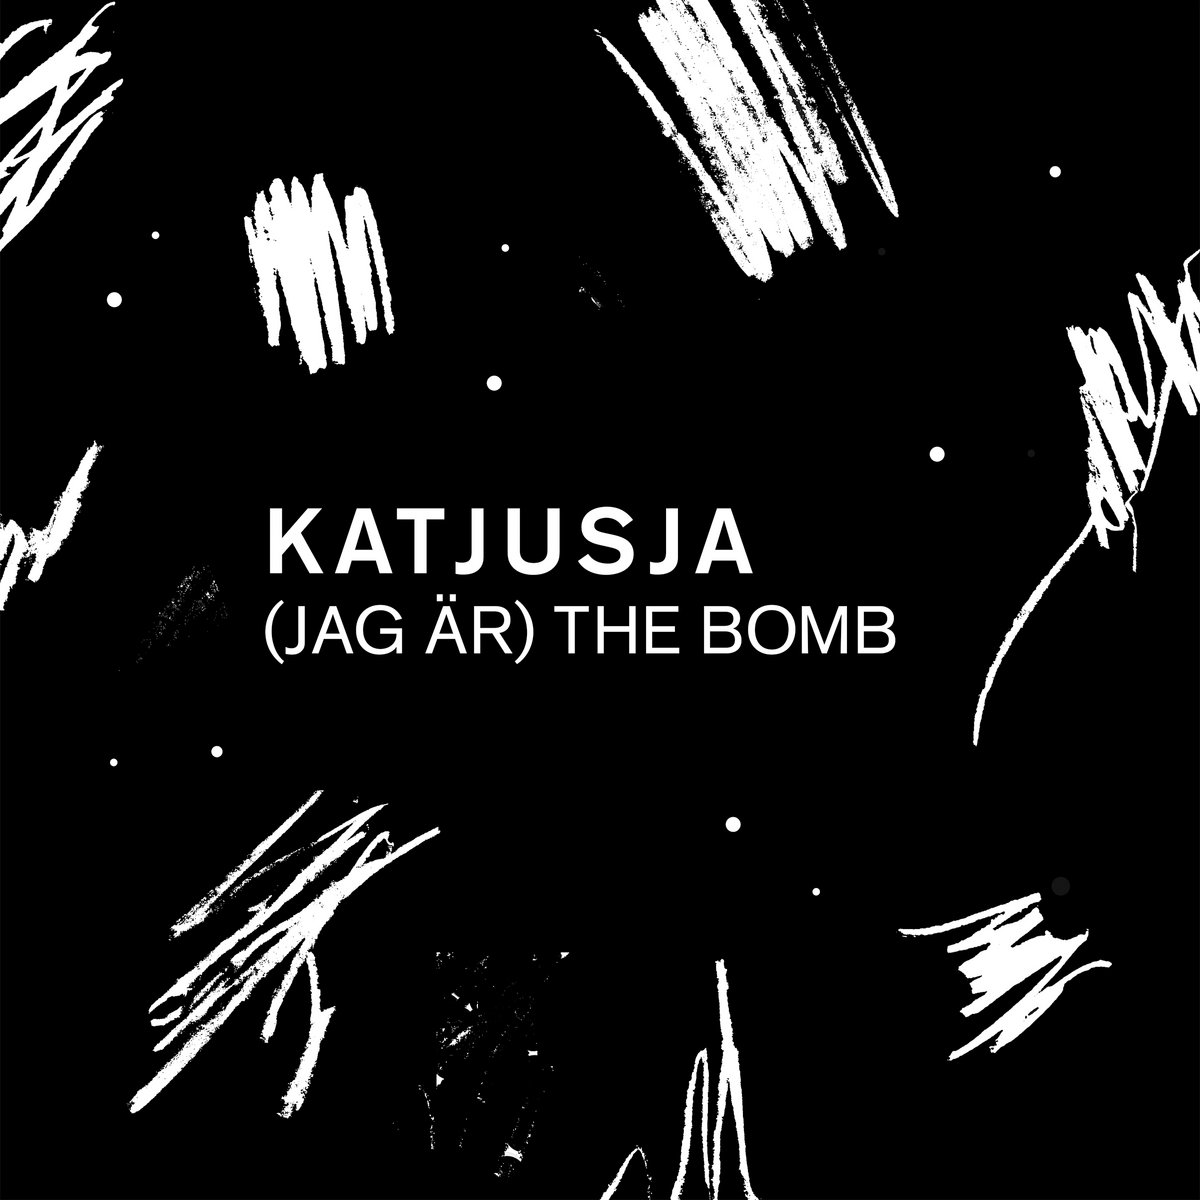 Katjusja — Bara för att de säger cover artwork